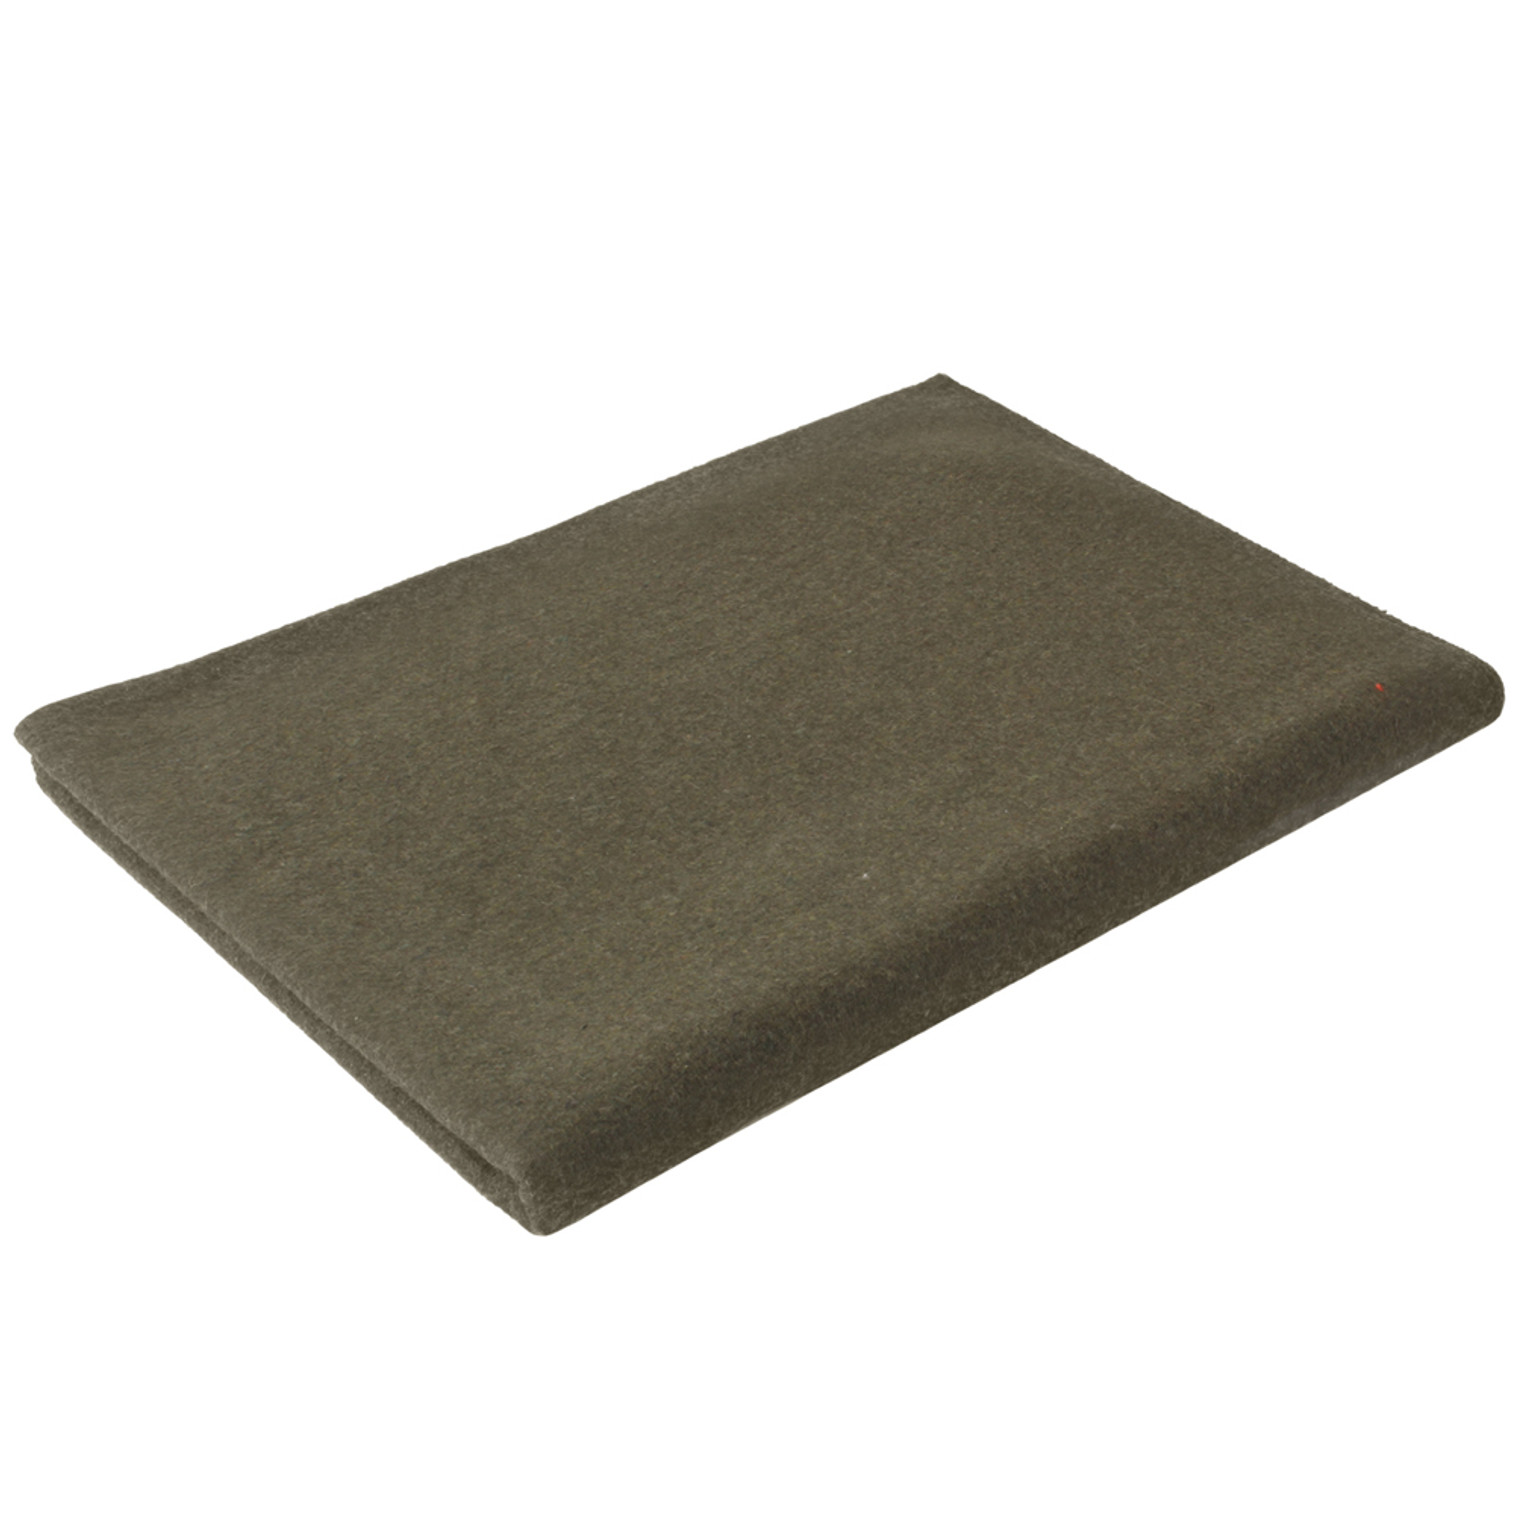 Woven Wool Blanket - 62" X 80"